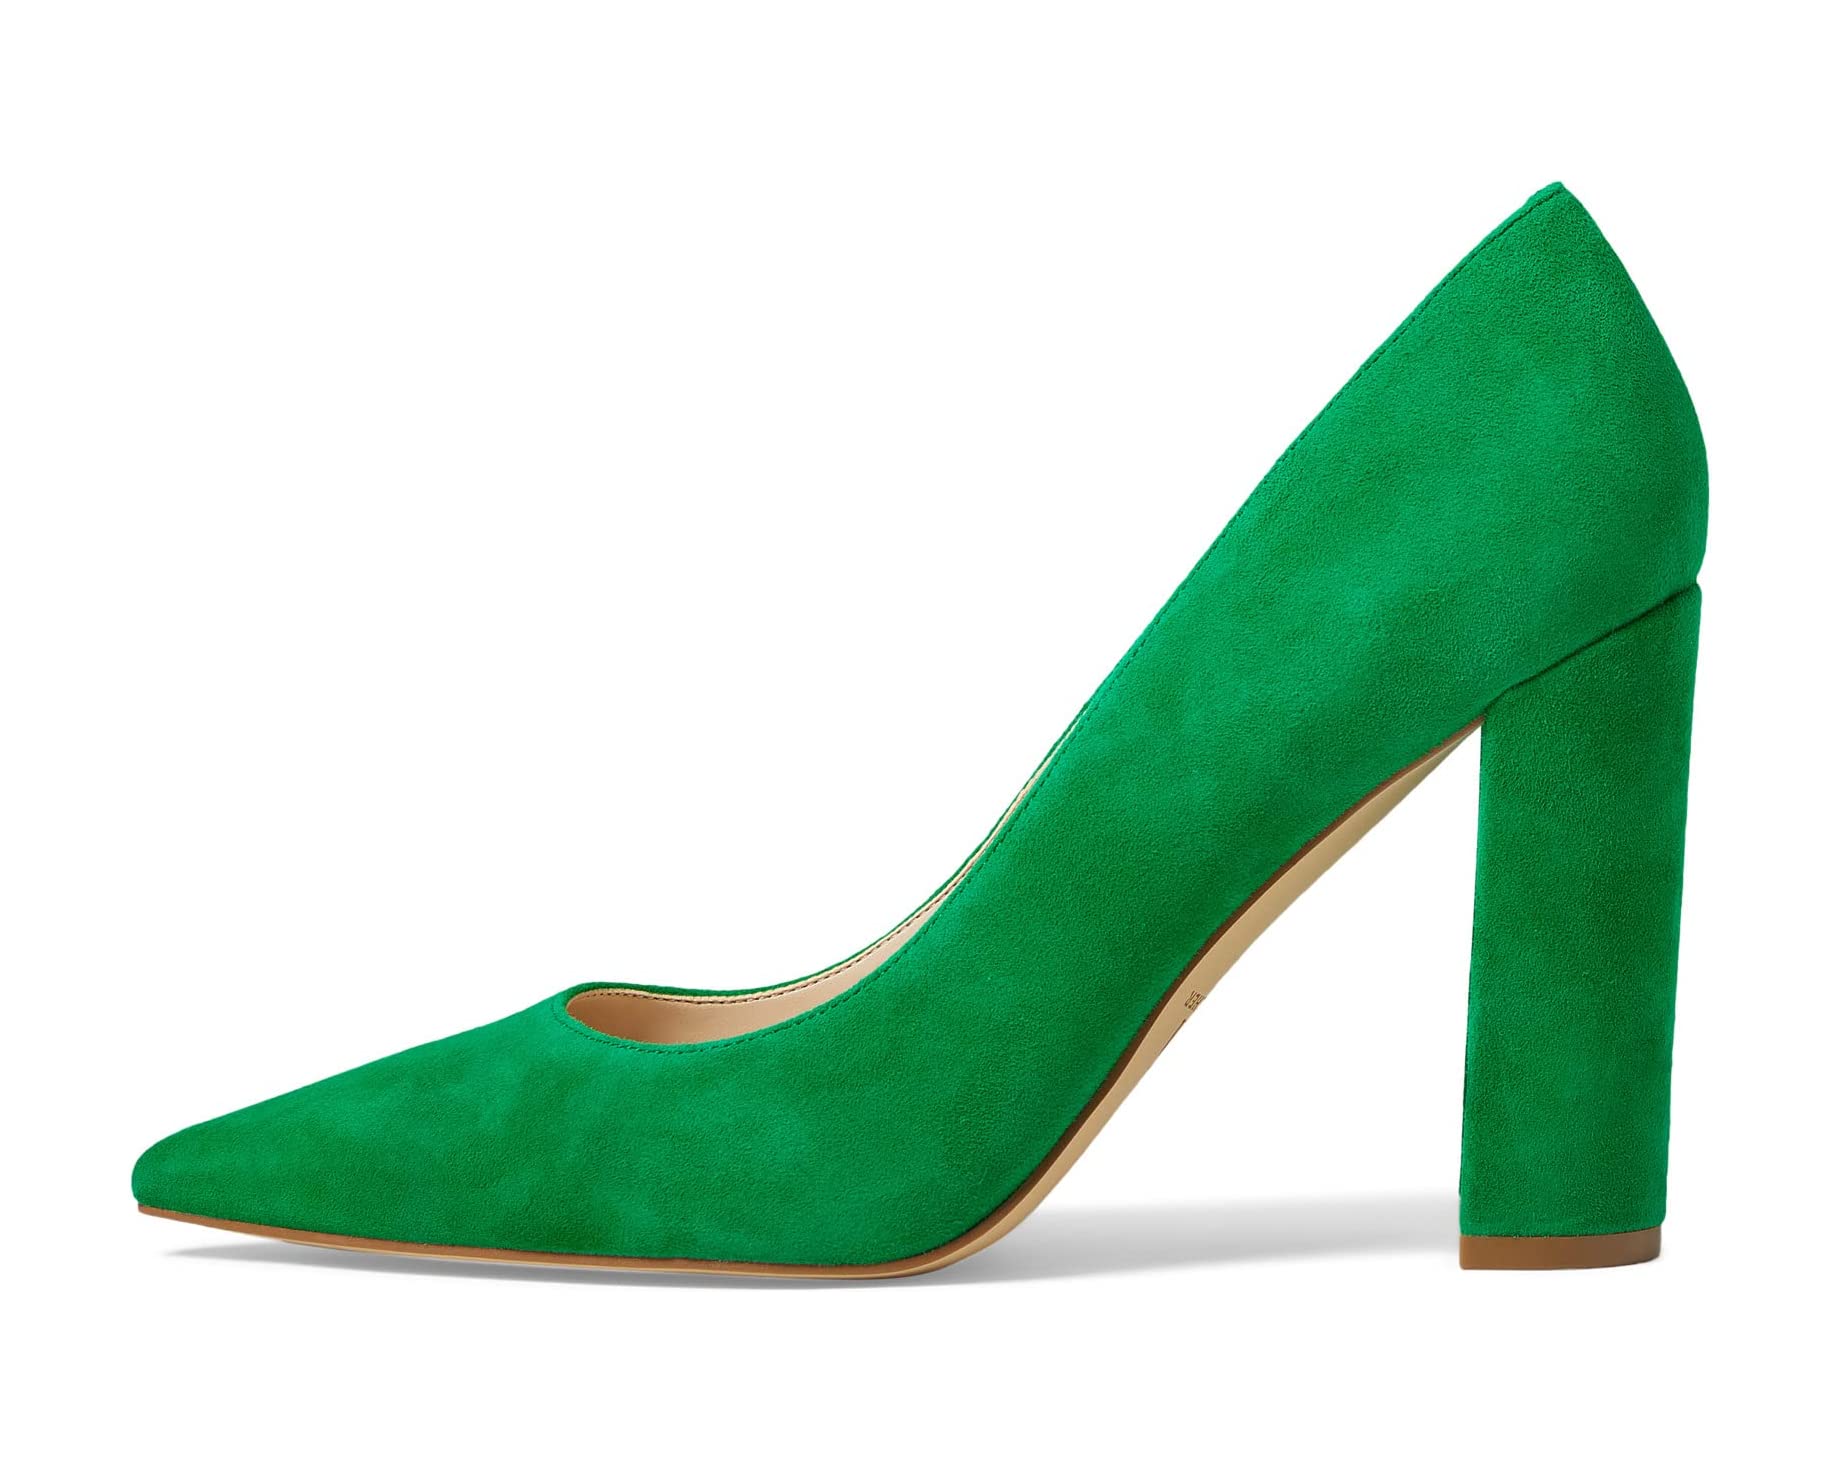 Туфли на каблуках Abilene Marc Fisher LTD, средний зеленый туфли marc fisher ltd giada цвет light natural